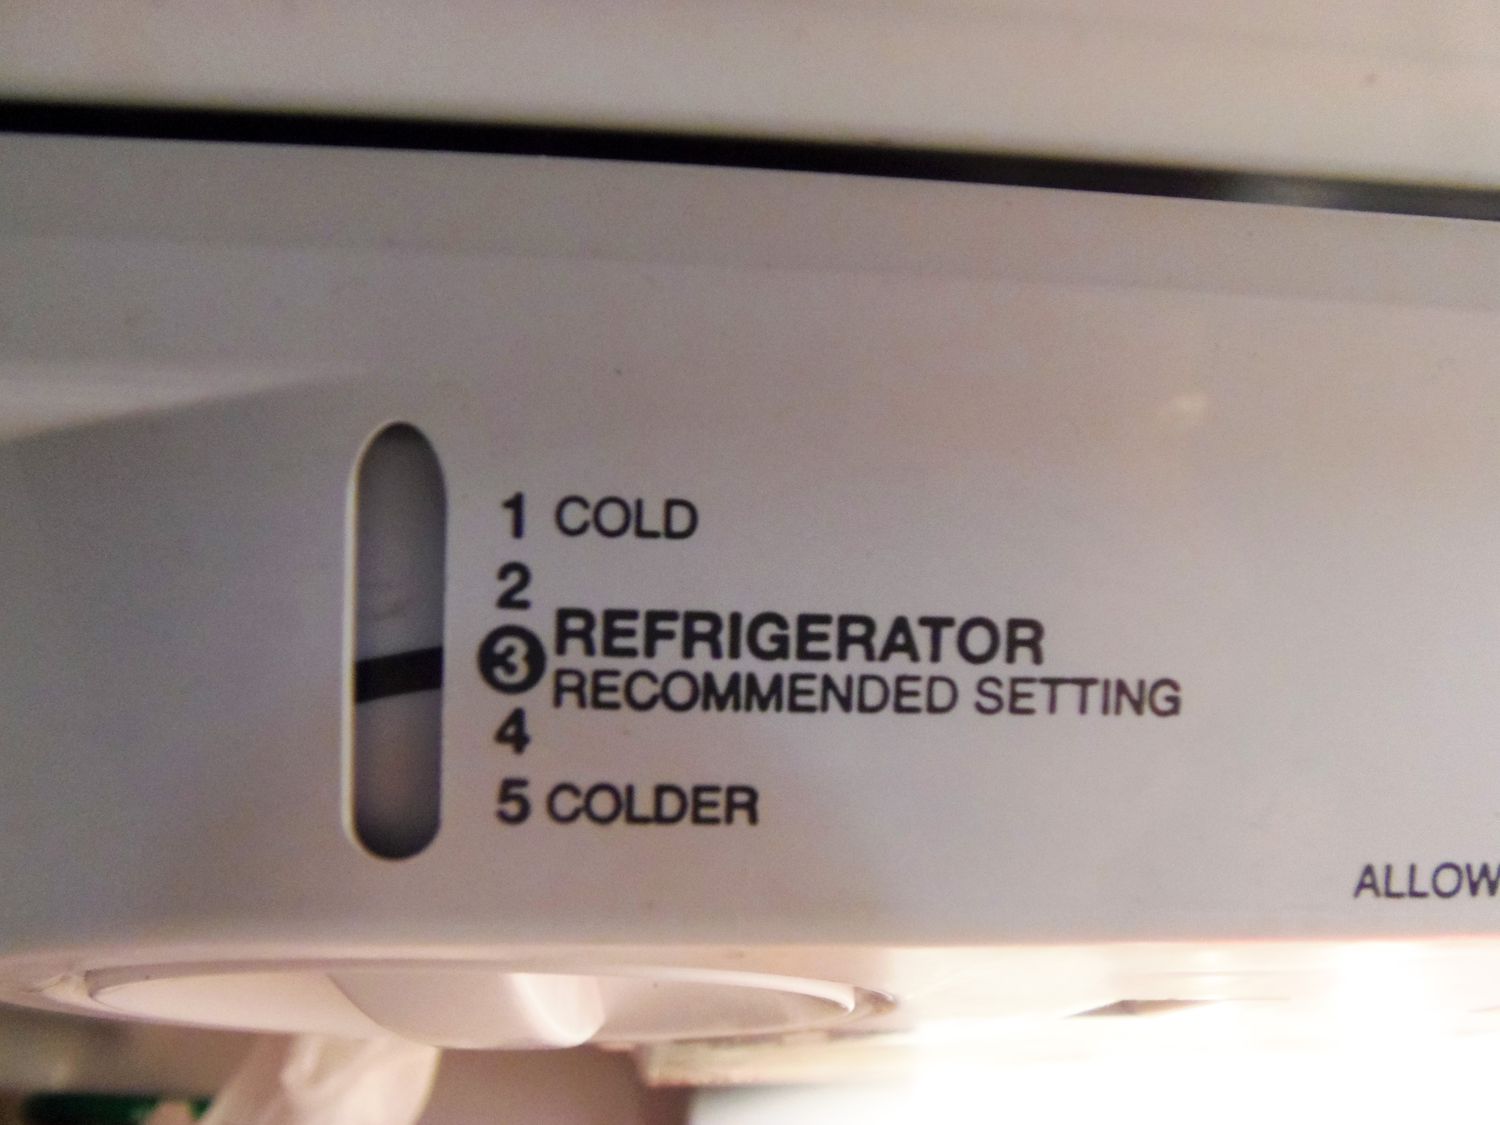 Configurações internas do refrigerador, incluindo frio, configuração recomendada e mais frio.